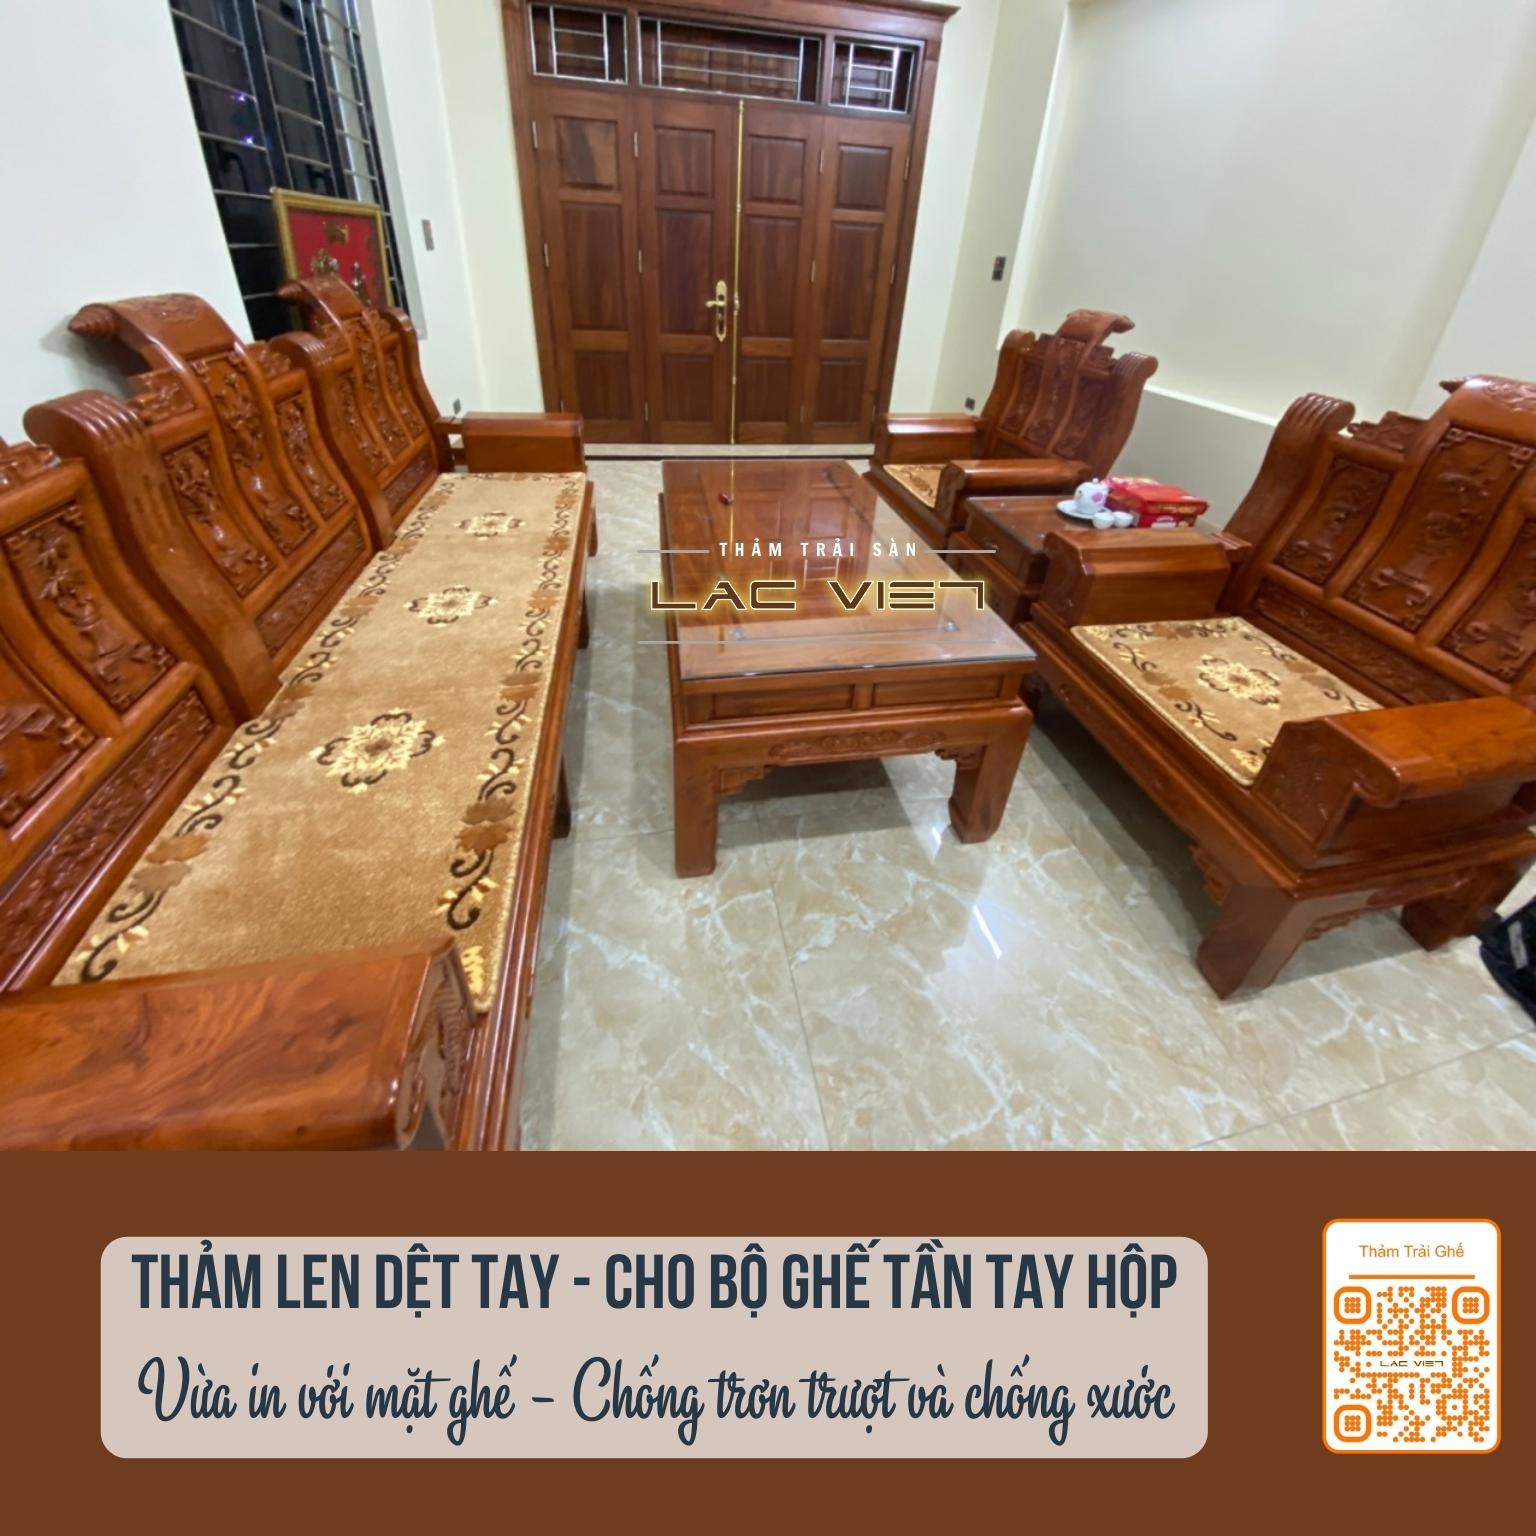 tham-trai-san-lac-viet-thảm trải ghế tần hộp len dệt thủ công (4)